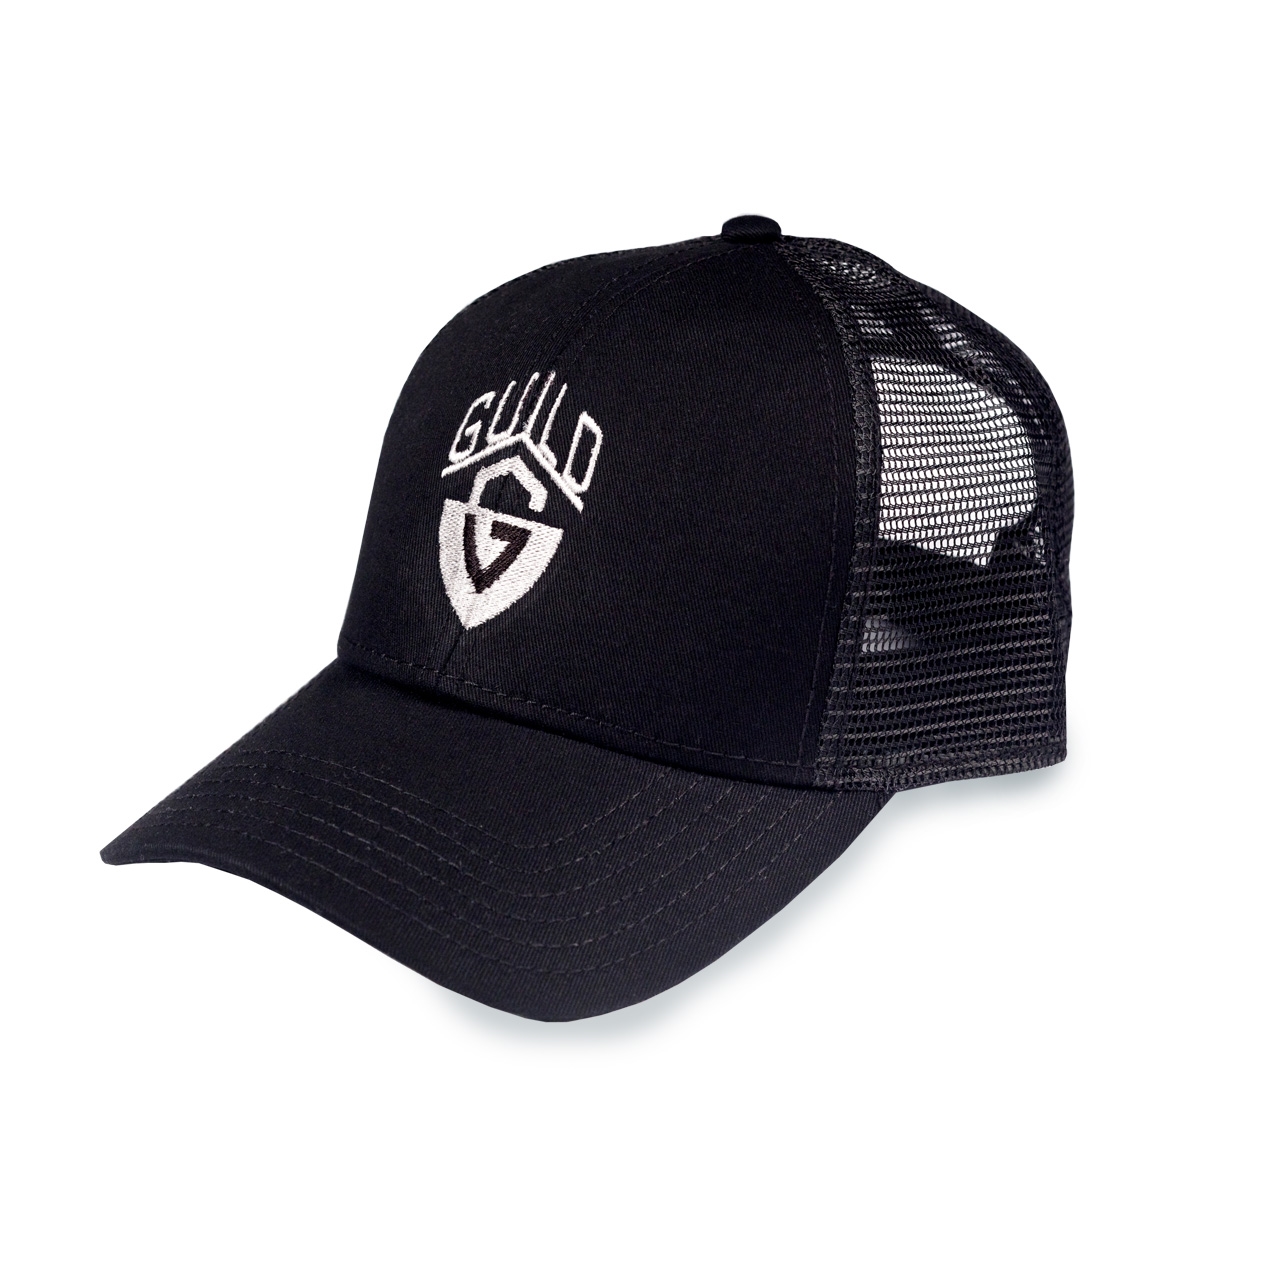 Guild Trucker Hat Black / White